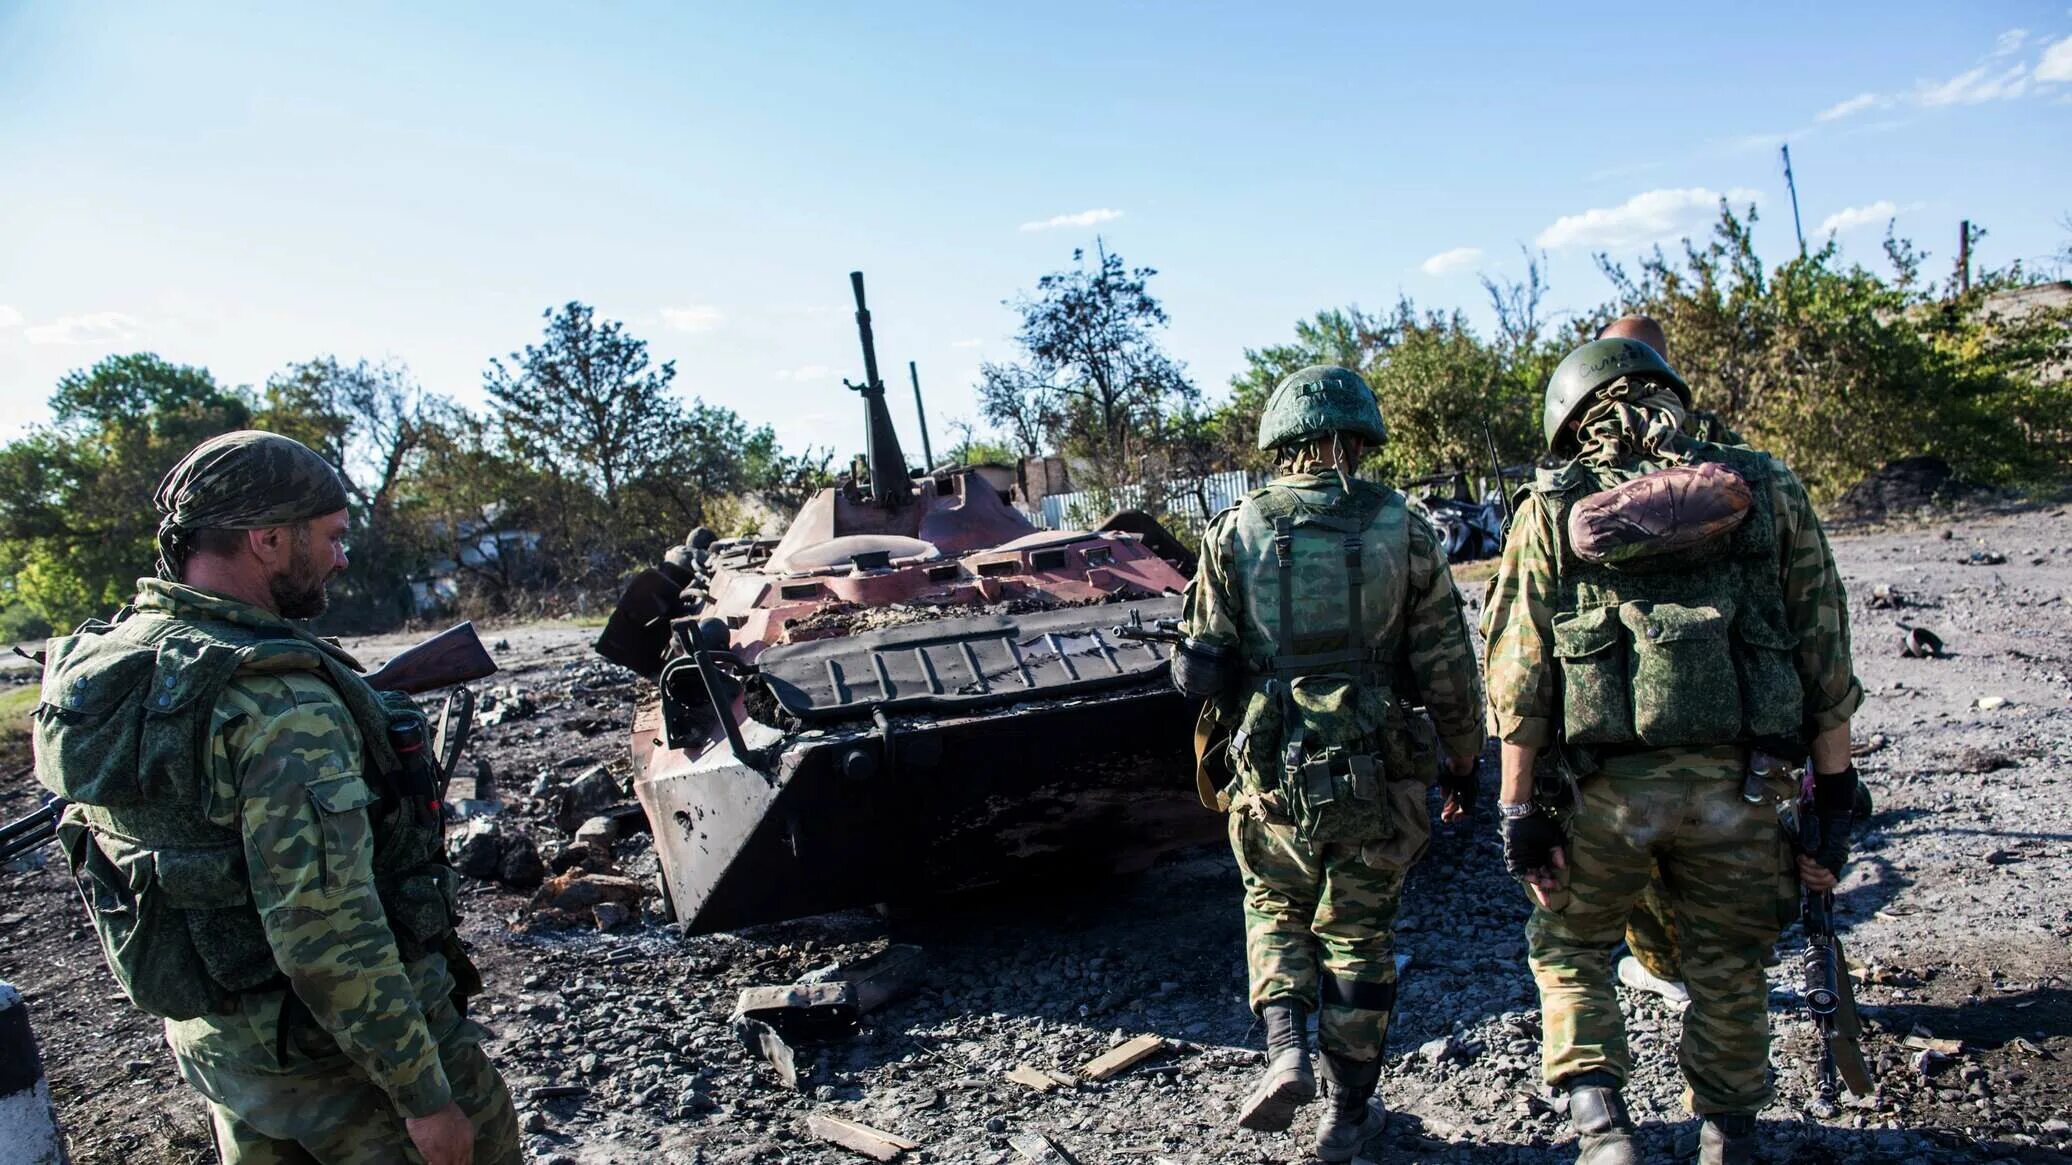 Ополчение Донбасса 2014 бои. Ополченцы под Мариуполем. 18 августа 2014